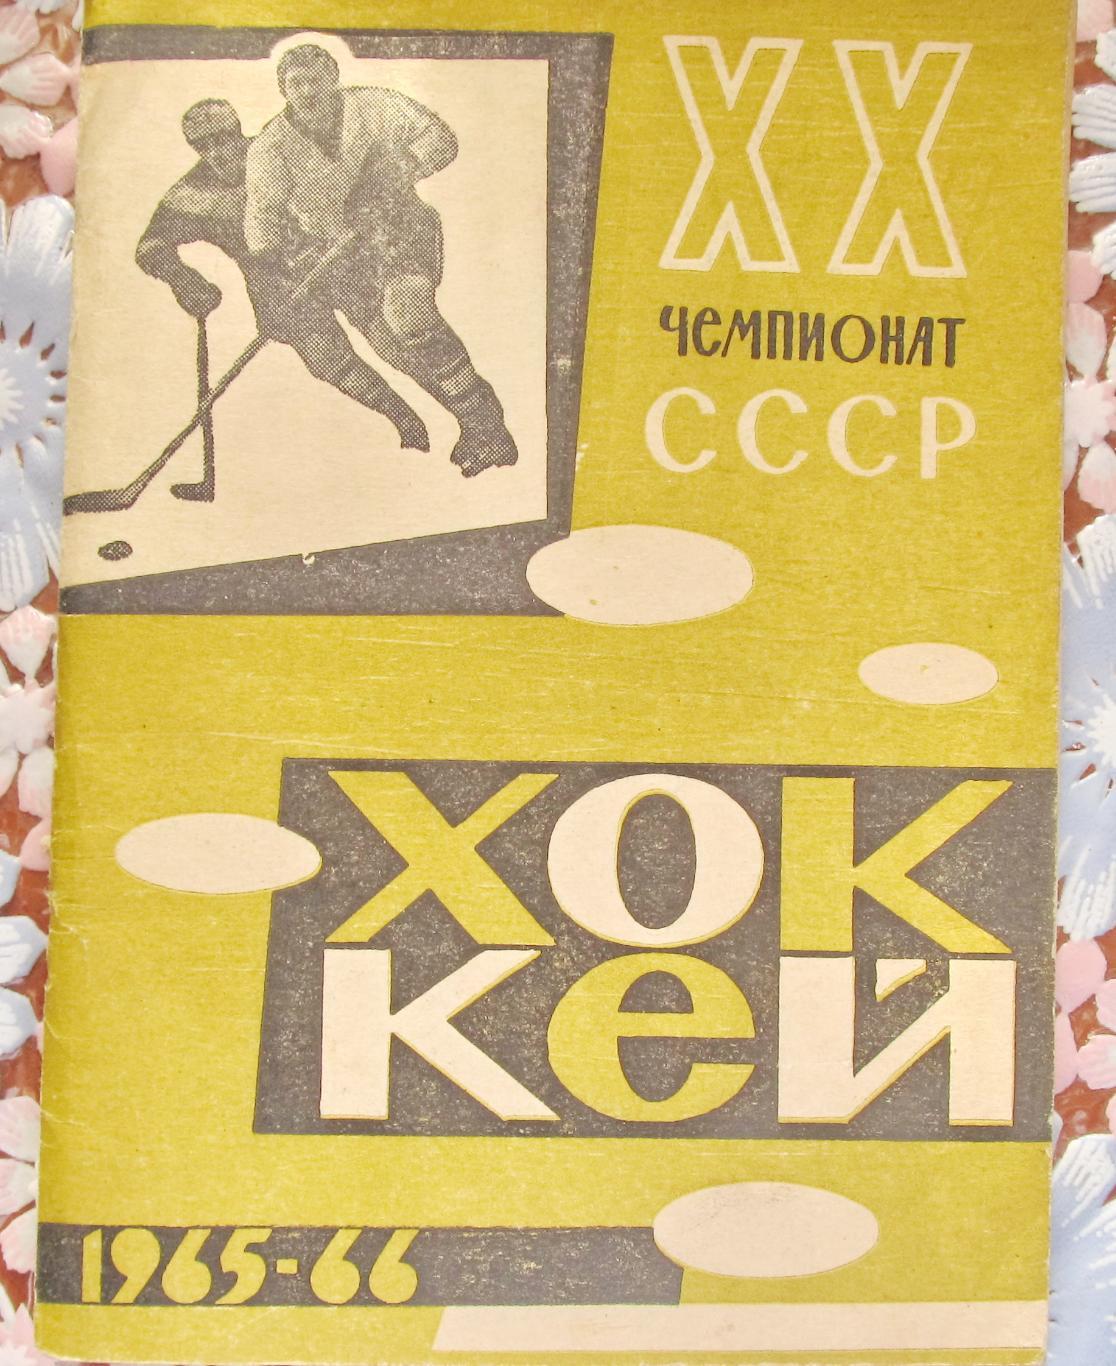 Хоккей с шайбой.Пермь 1965/1966, календарь-справочник